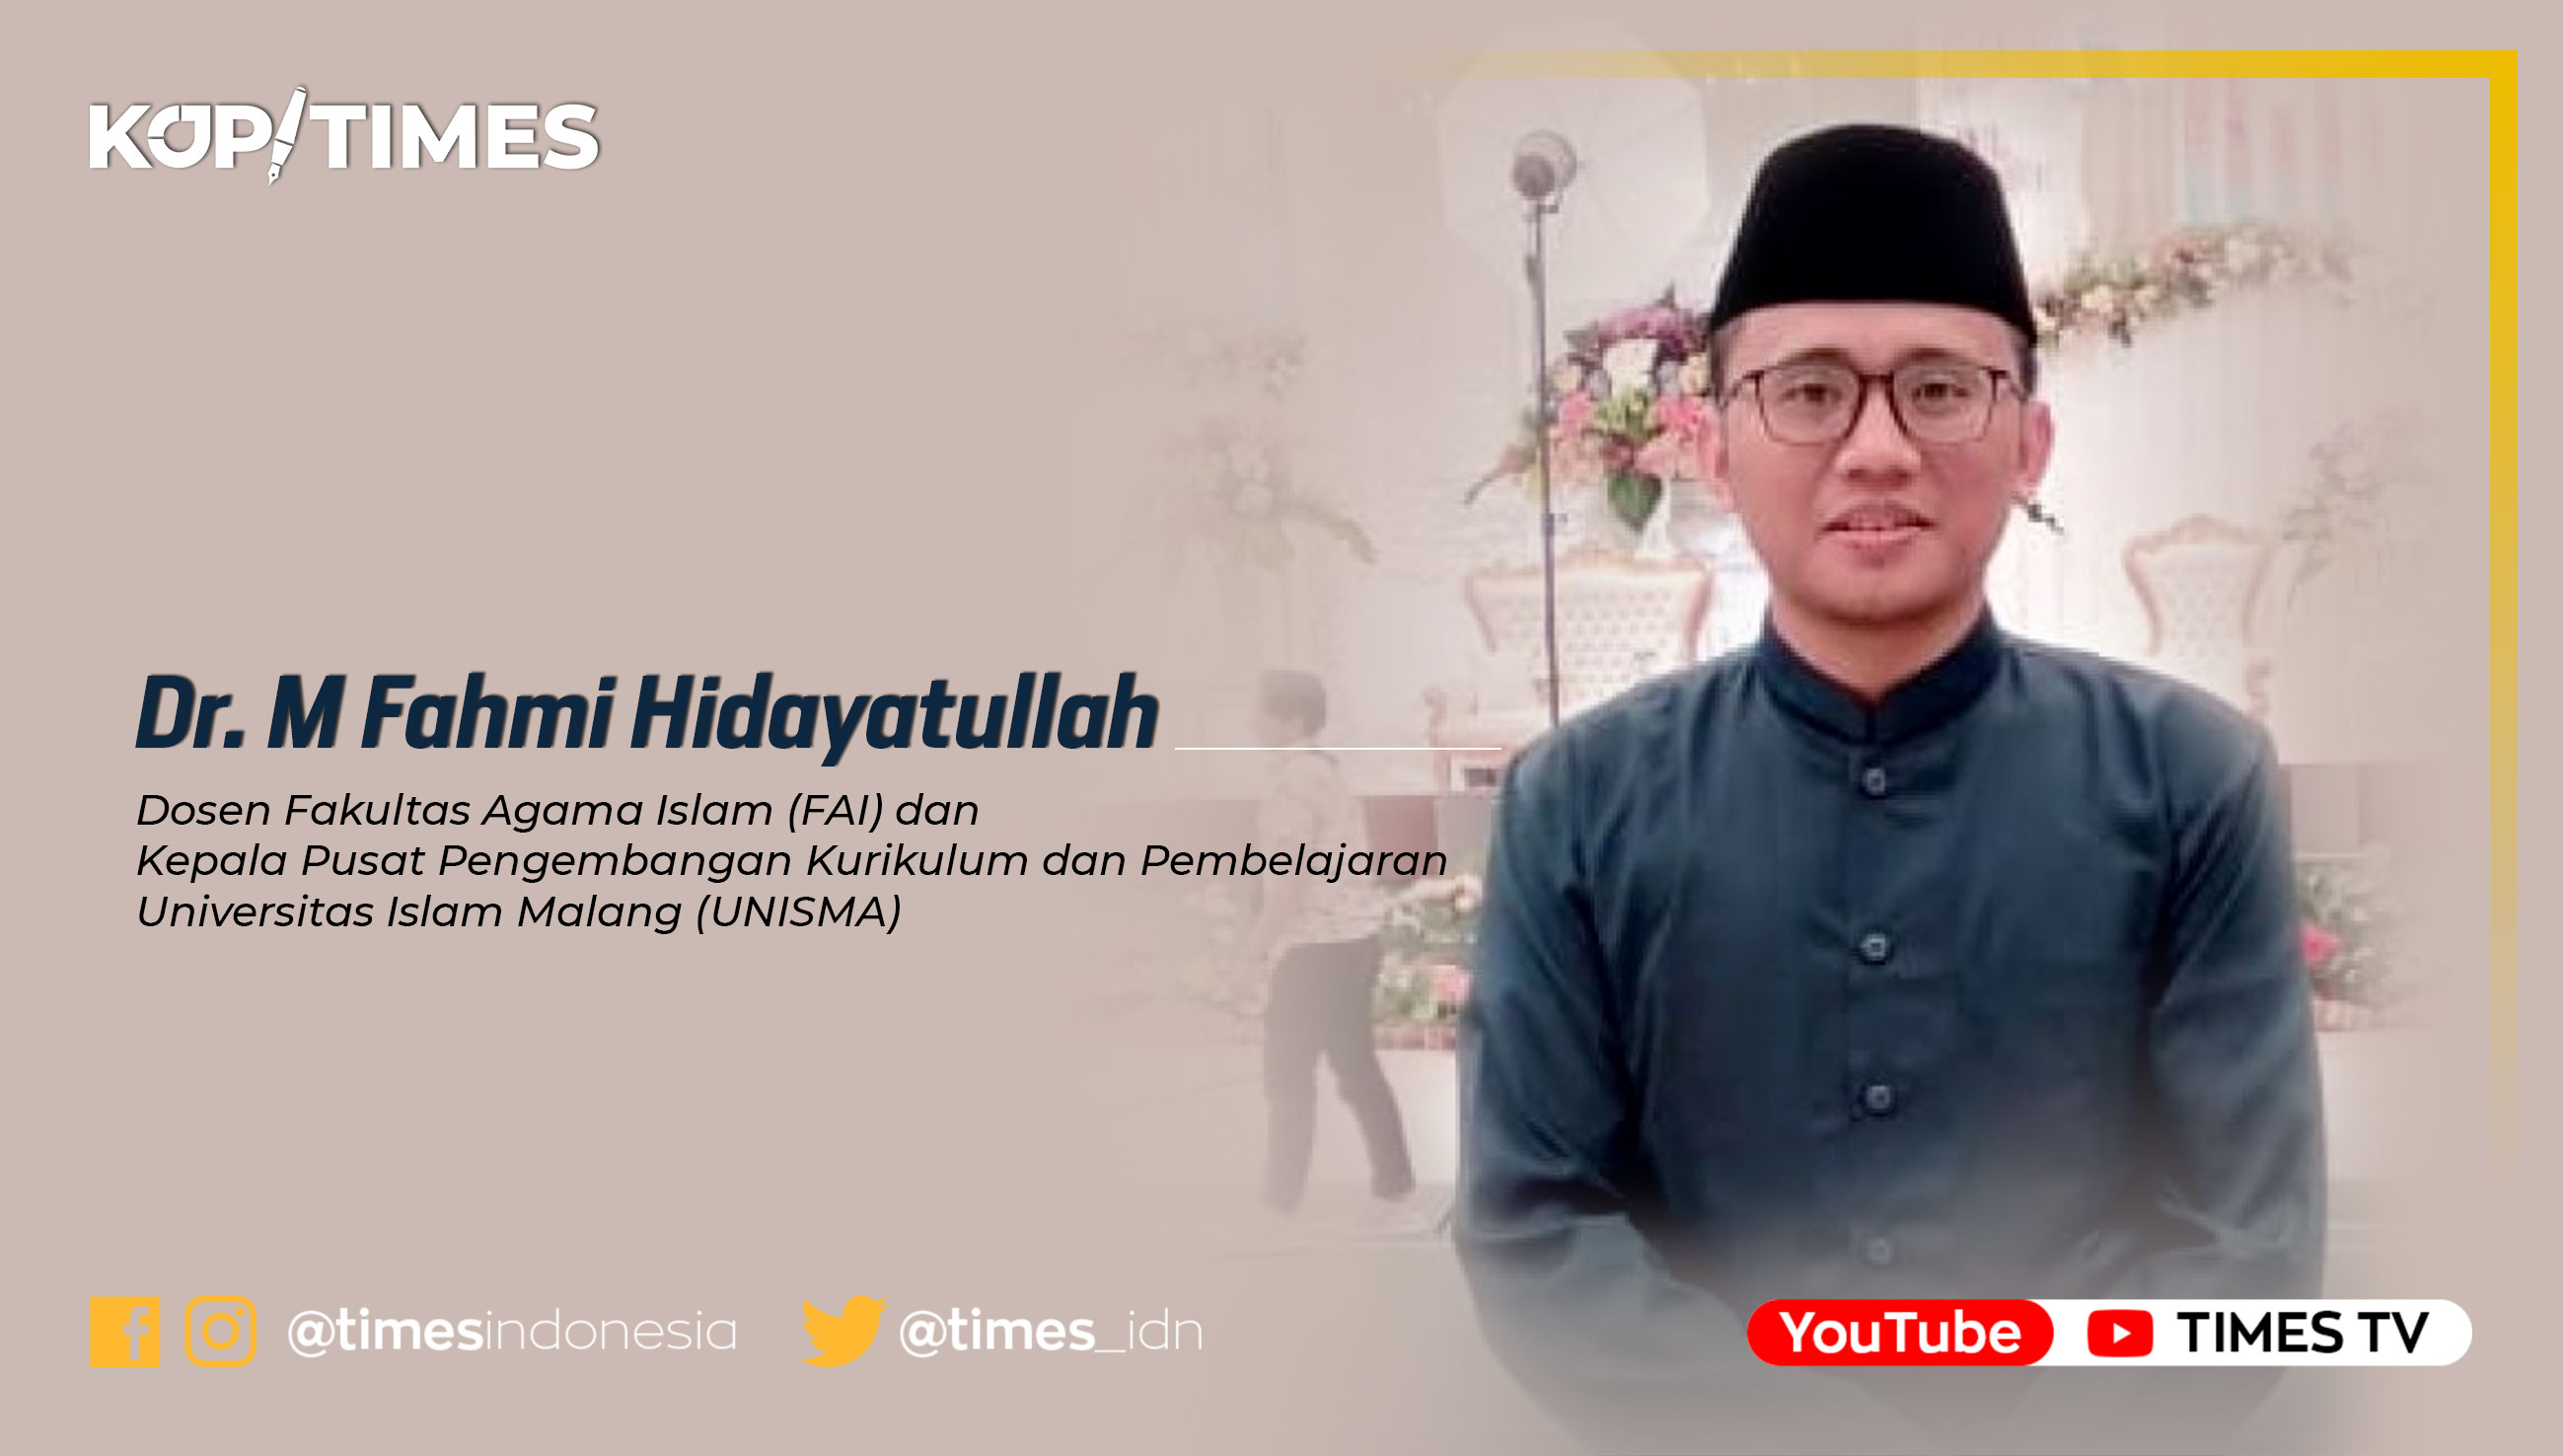 Dr. Muhammad Fahmi Hidayatullah, M.Pd.I, Dosen Fakultas Agama Islam UNISMA, Kepala Pusat Pengembangan Kurikulum dan Pembelajaran UNISMA.